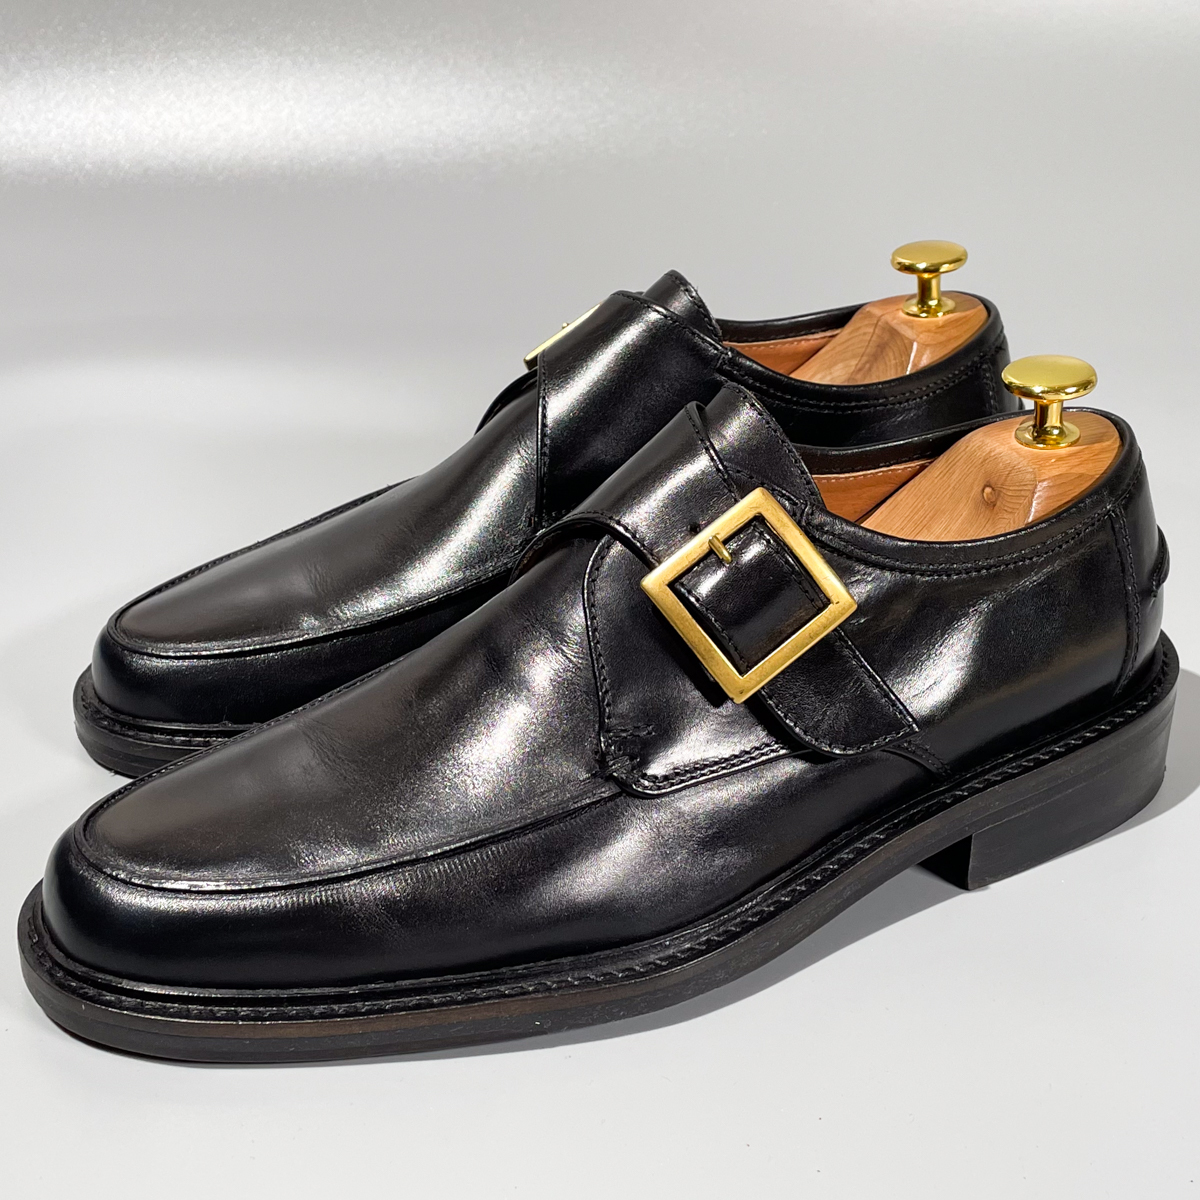 即決 REGAL リーガル モンクストラップ イタリア製 ブラック 黒 メンズ 本革 レザー 革靴 25.5cm 26cm ビジネスシューズ 紳士靴 F1864の画像1